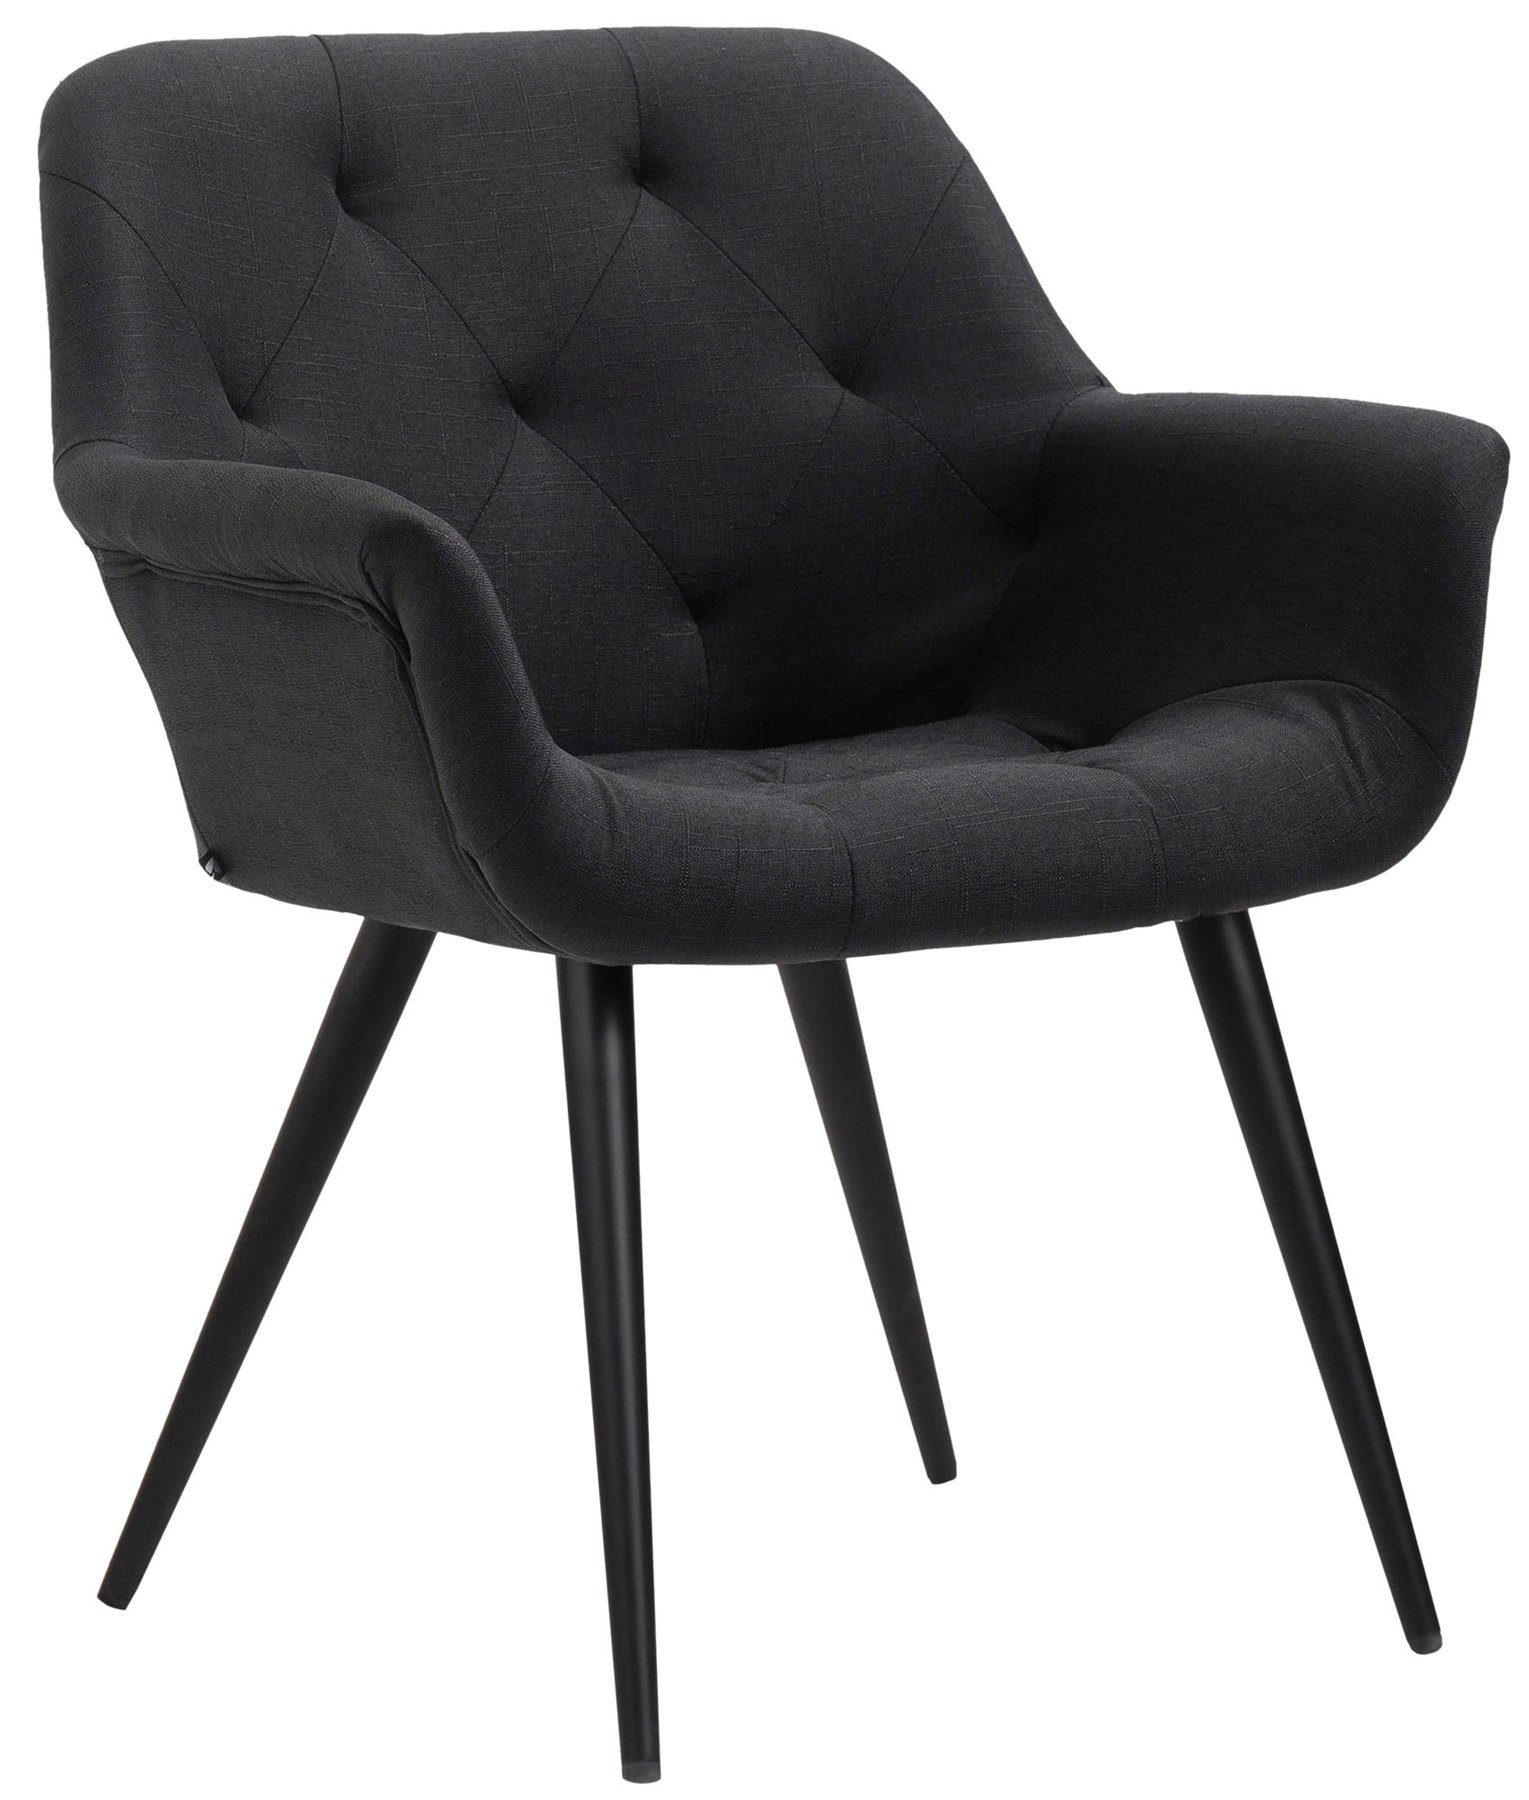 TPFLiving Esszimmerstuhl Lamfol mit hochwertig gepolsterter Sitzfläche - Konferenzstuhl (Küchenstuhl - Esstischstuhl - Wohnzimmerstuhl), Gestell: Metall schwarz - Sitzfläche: Stoff schwarz | Stühle